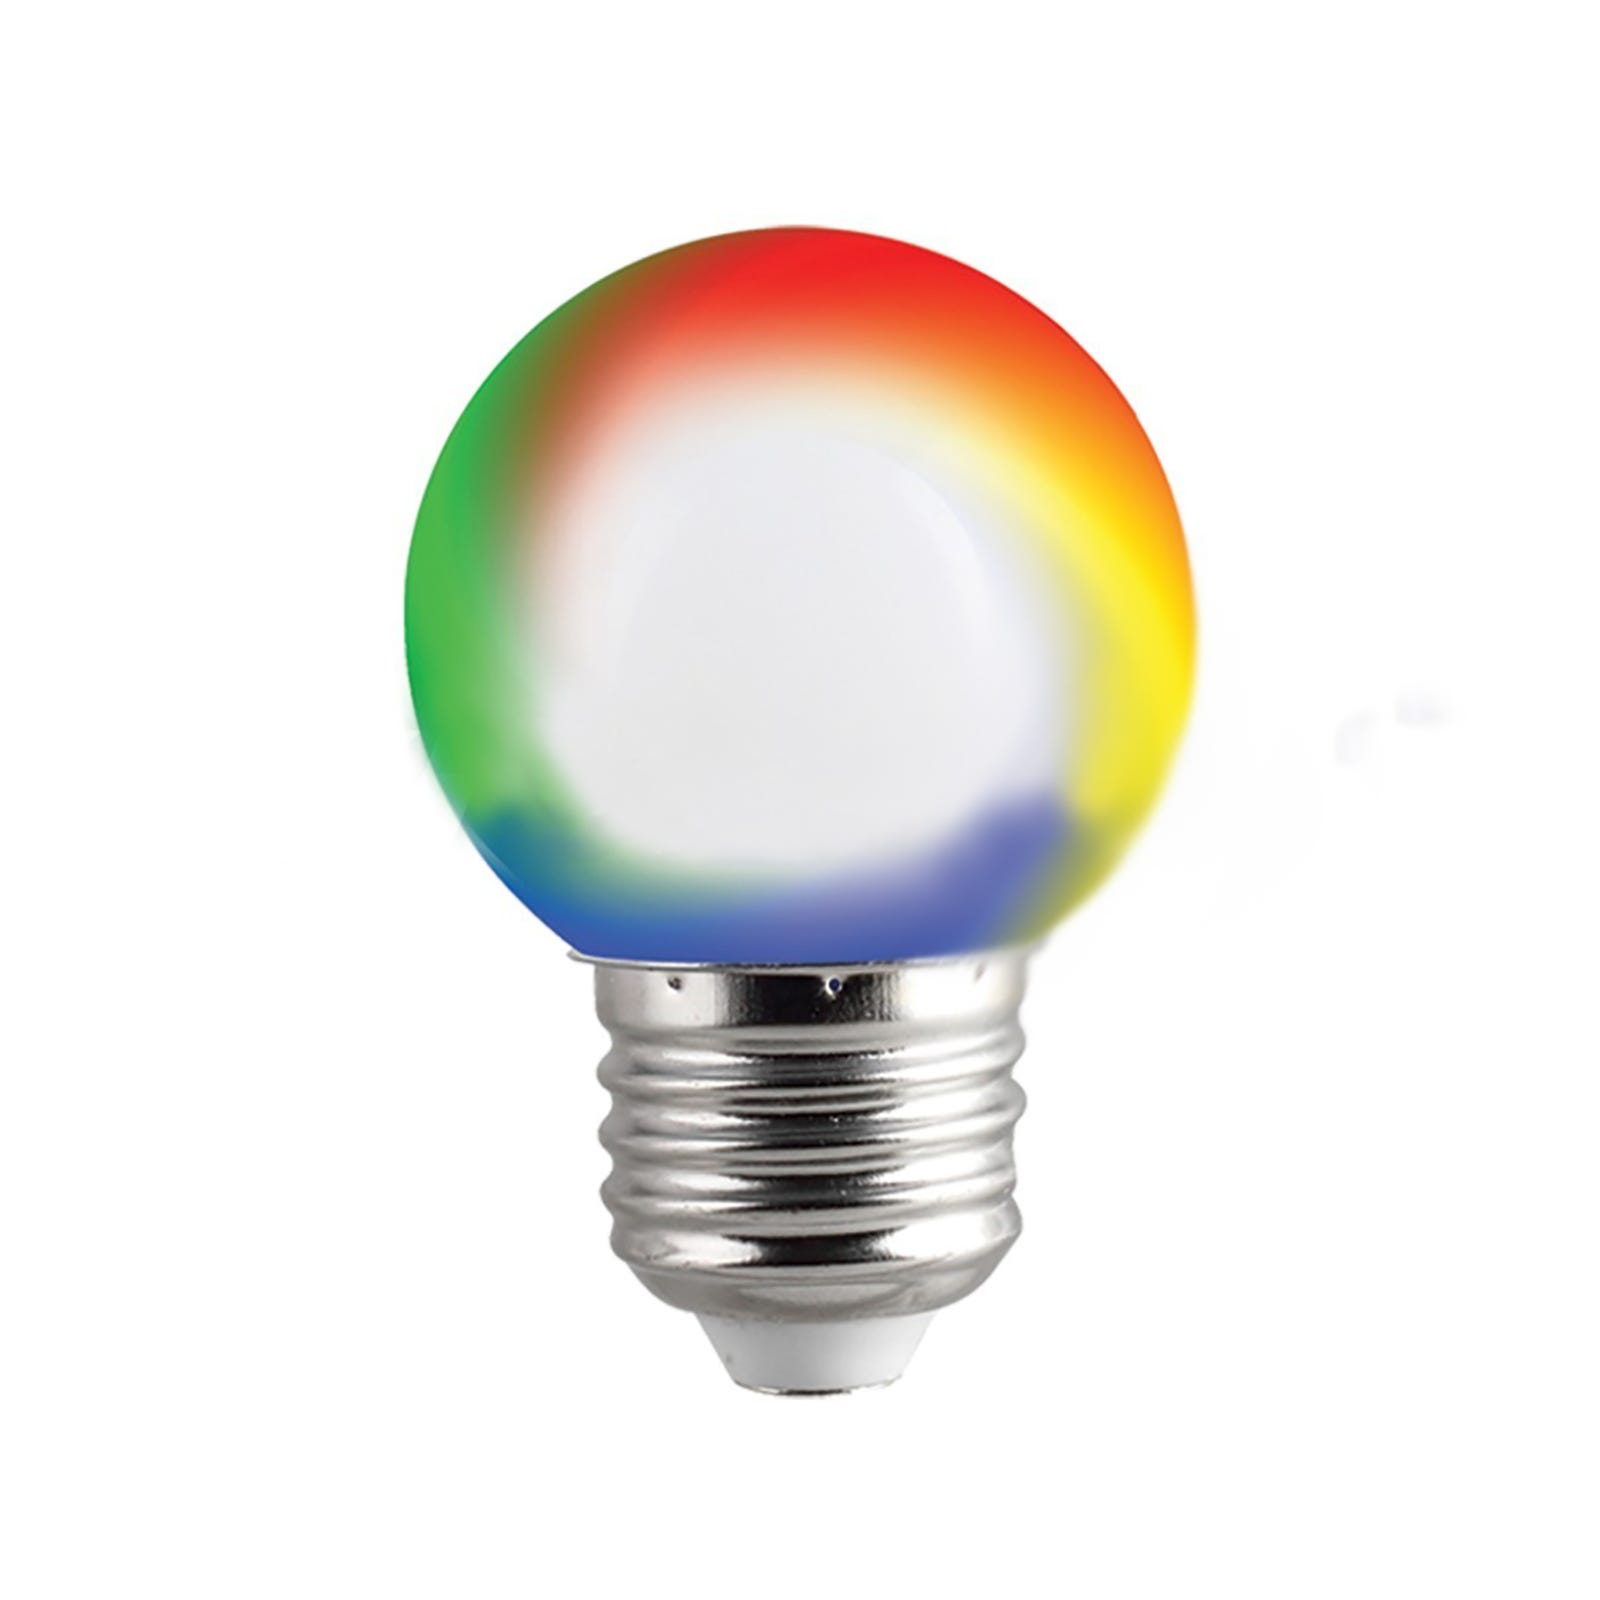 Ampoule disco led rgb e27 3w multicolore rotation 360 ° edm